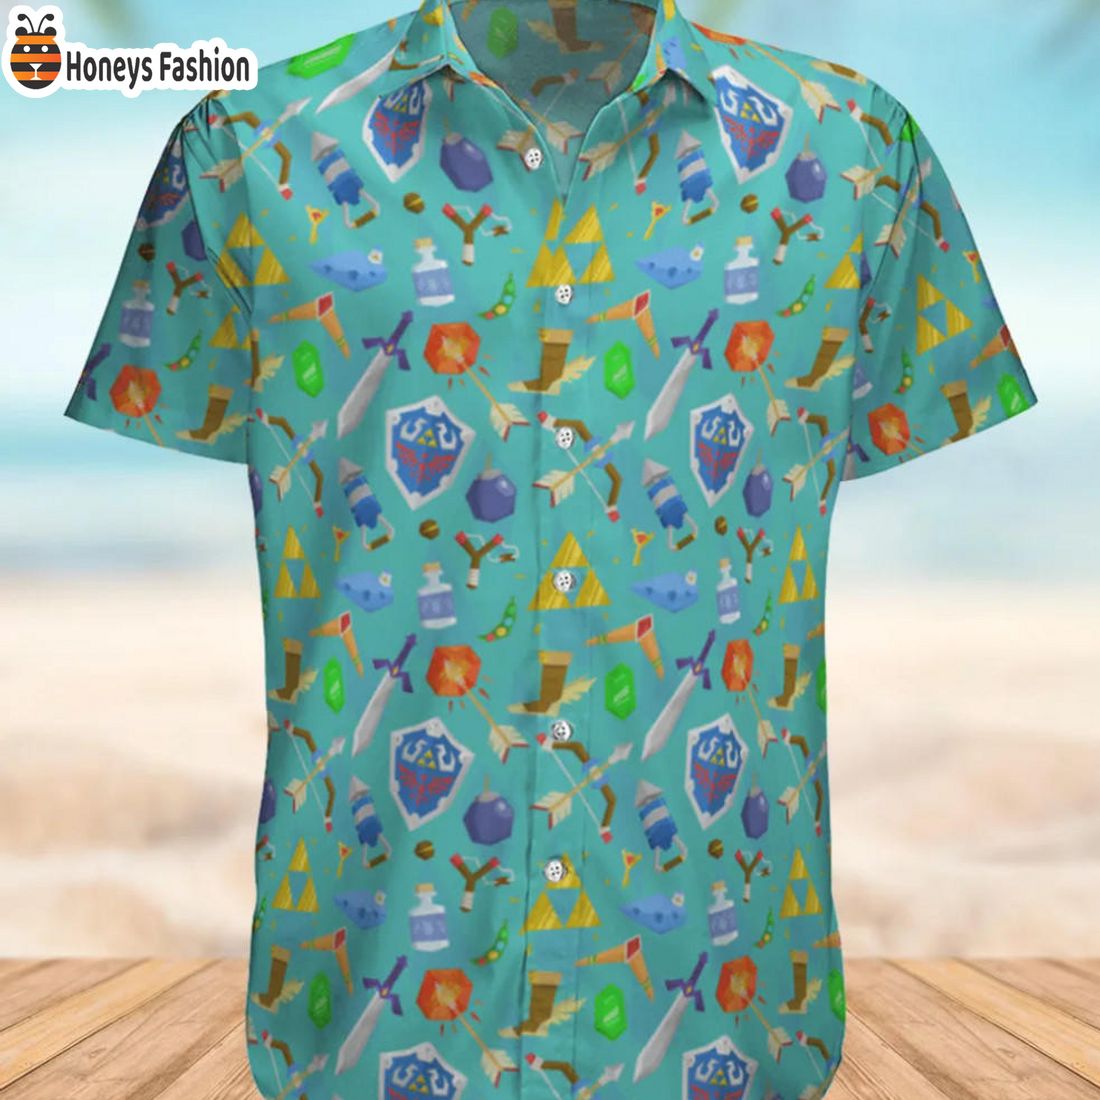 TRENDING Legend of Zelda Game Item Pattern Hawaiian Shirt